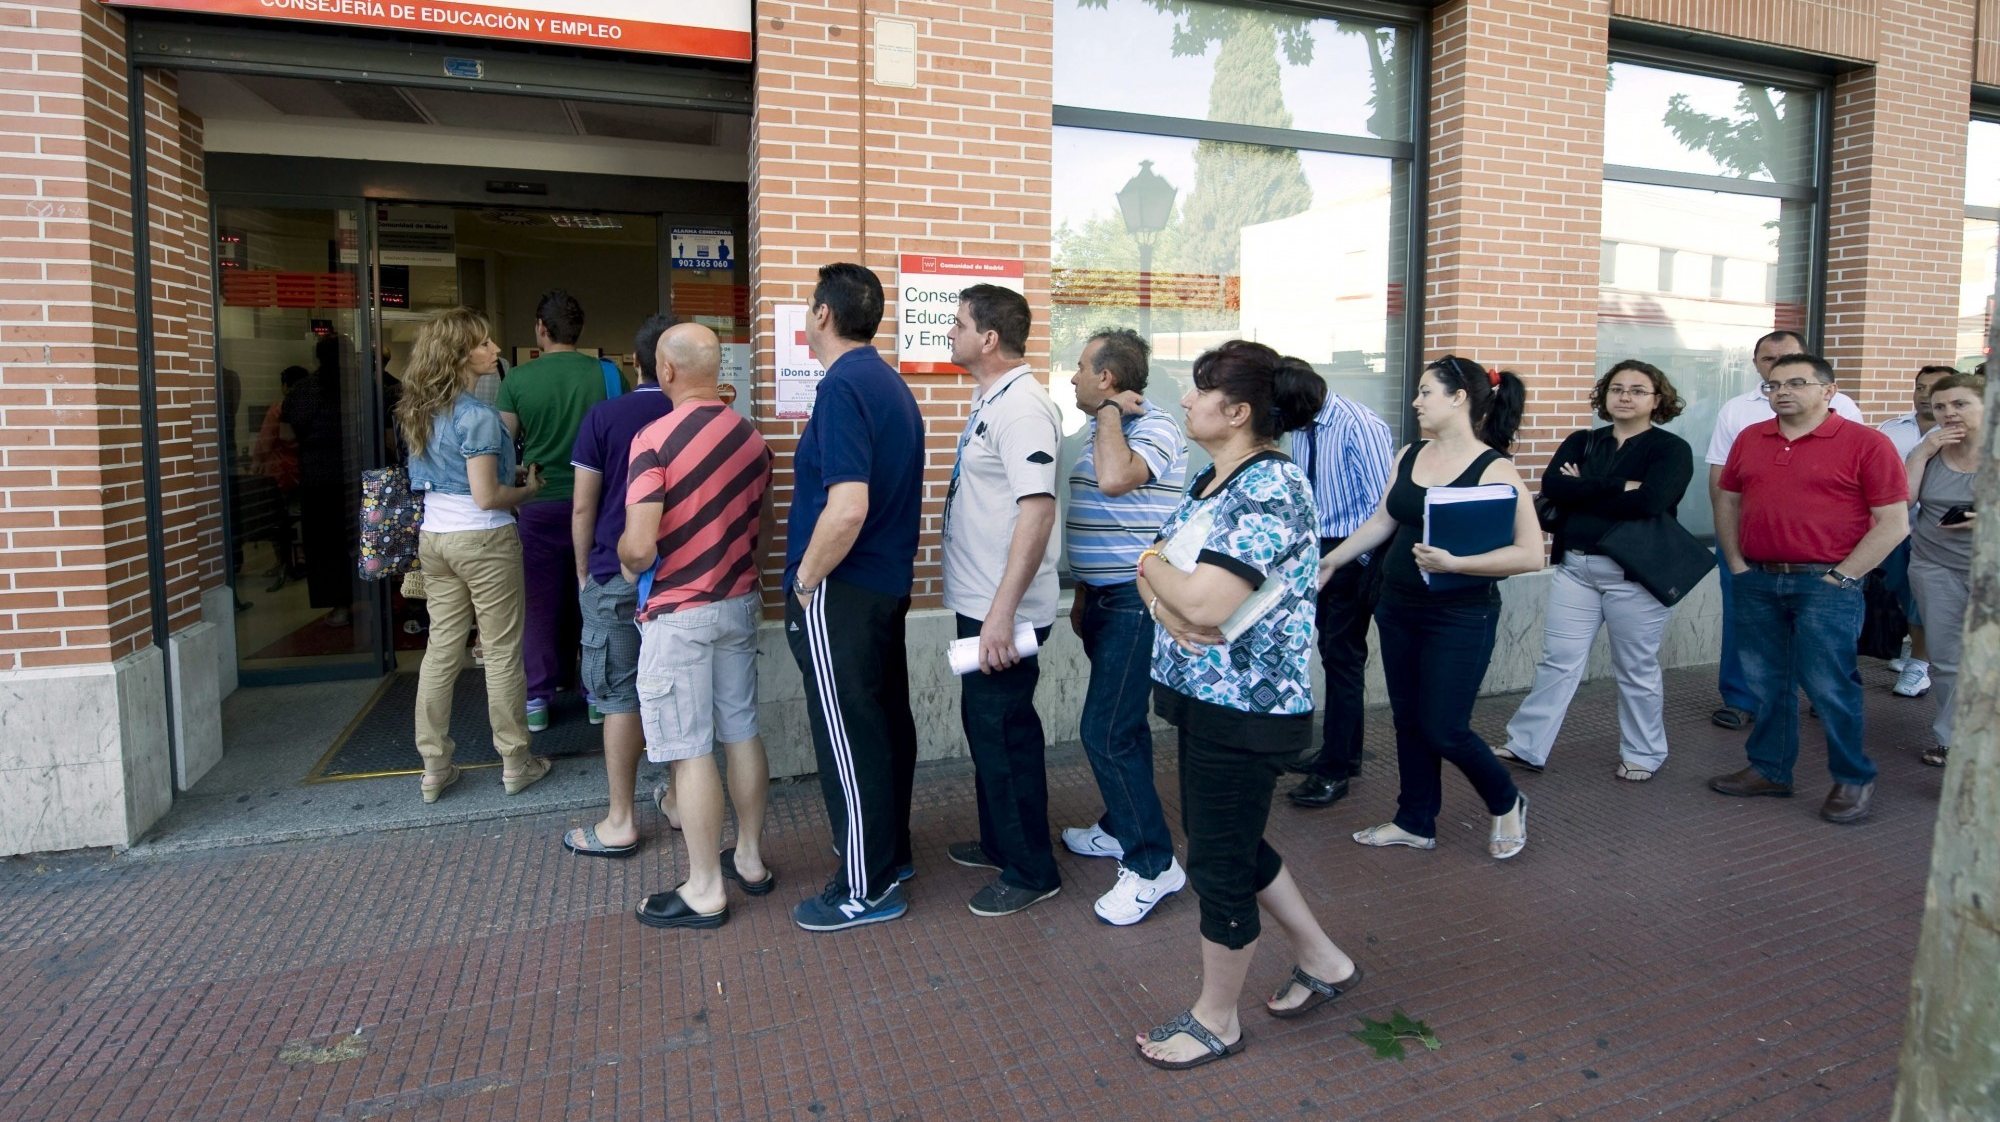 Em Portugal, o desemprego foi de 6,8%, acima da média da zona euro